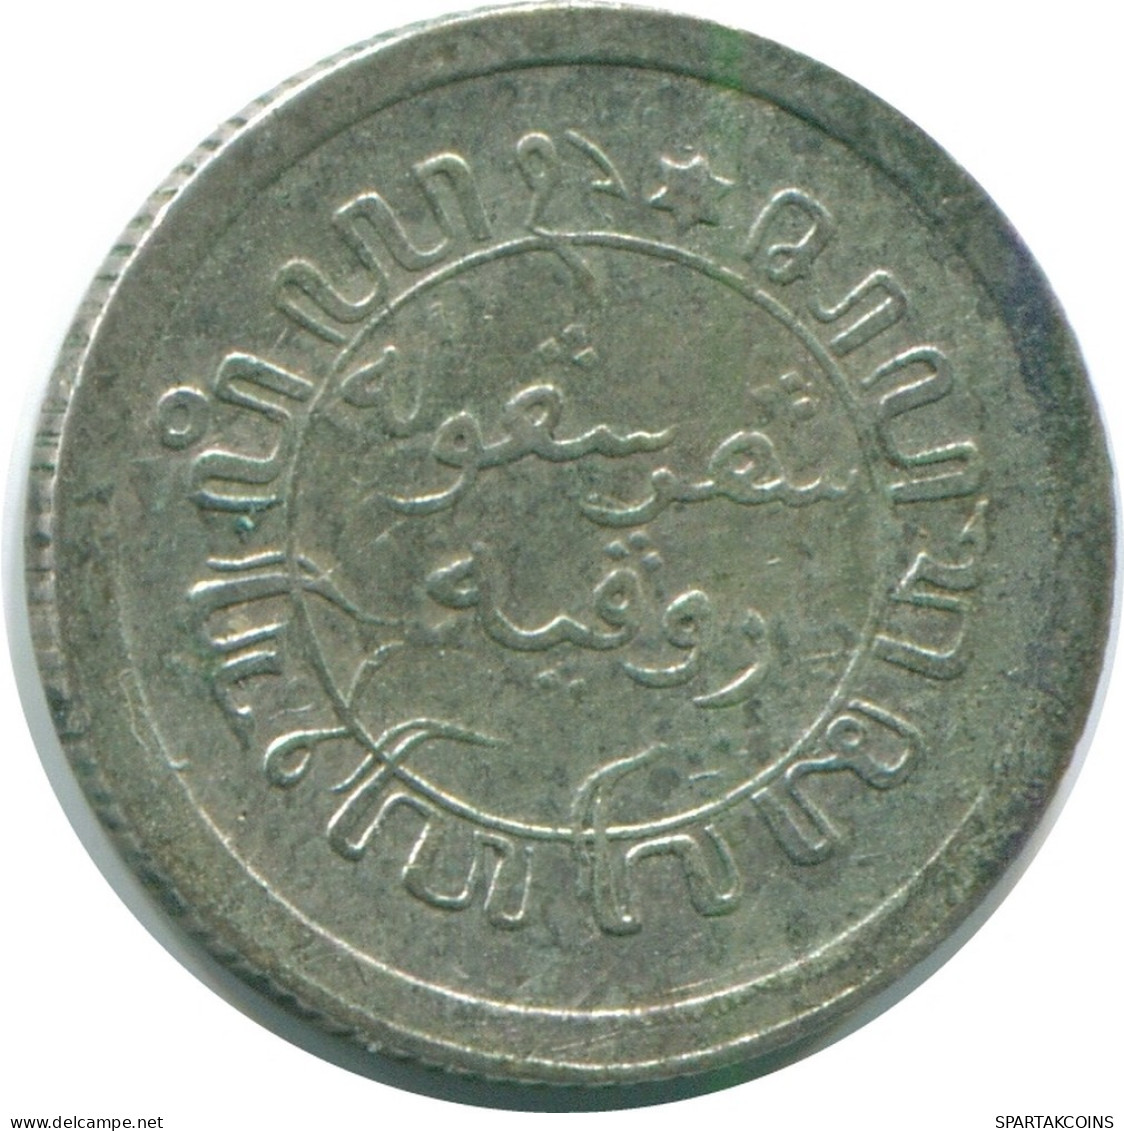 1/10 GULDEN 1930 NETHERLANDS EAST INDIES SILVER Colonial Coin #NL13458.3.U.A - Niederländisch-Indien